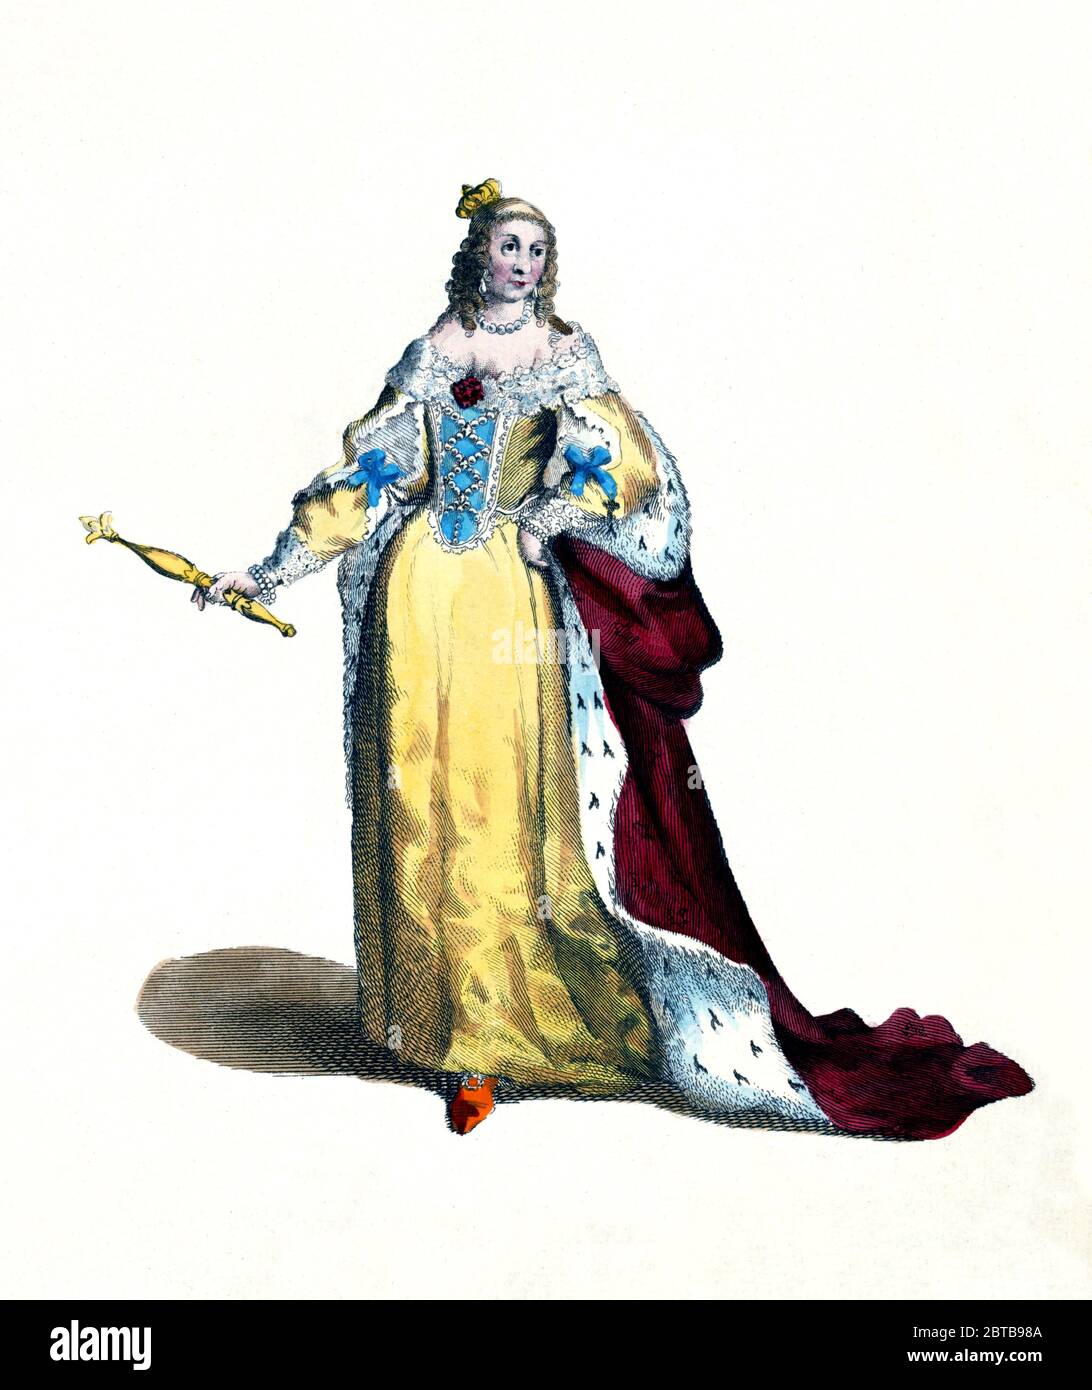 1630 ca, FRANCIA: La regina francese Anna d'Austria von Habsburg (1601 - 1666) sposata con il re LUIGI XIII (1601 - 1643) Borbone . Madre di Luigi XIV le Roi Soleil . Ritratto di un incisore sconosciuto , pubblicato nel 1757 .- ASBURGO - ABSBURGO - ASBURGO - NOBILITY - NOBILI francesi - Nobiltà francese - FRANCIA - illustrazione - illustrazione - incisione - LUIGI XIII Regina Anna di Francia - corona - corona - pizzo - perle - perle - perle - perla - perla - lusso - lusso - Barocco - MODA - moda - moda --- ARCHIVIO GBB Foto Stock